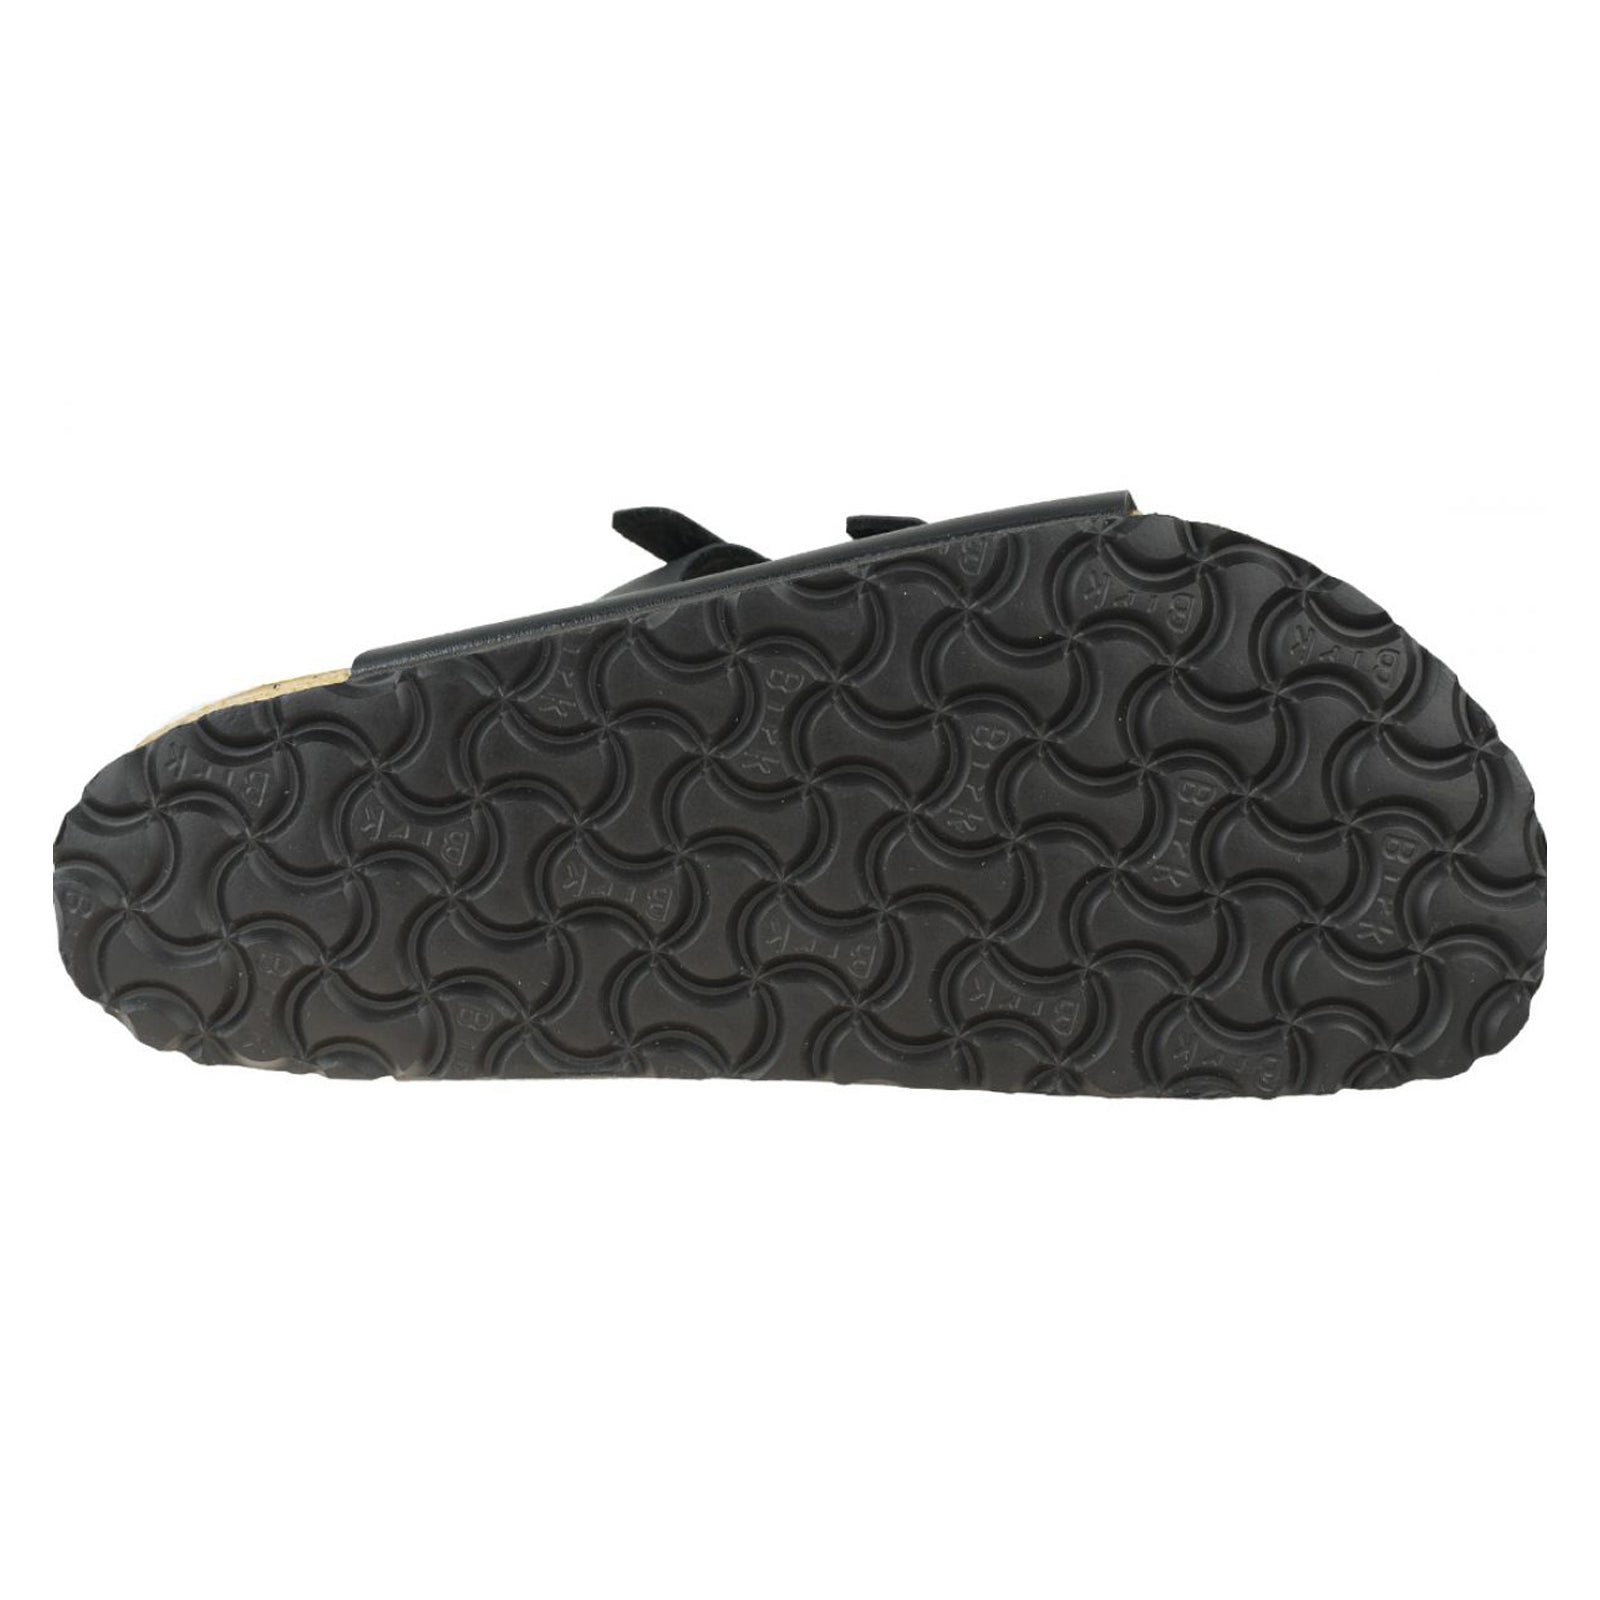 Birkenstock Florida Soft Footbed Birko-Flor Unisex Slide Sandals#color_black